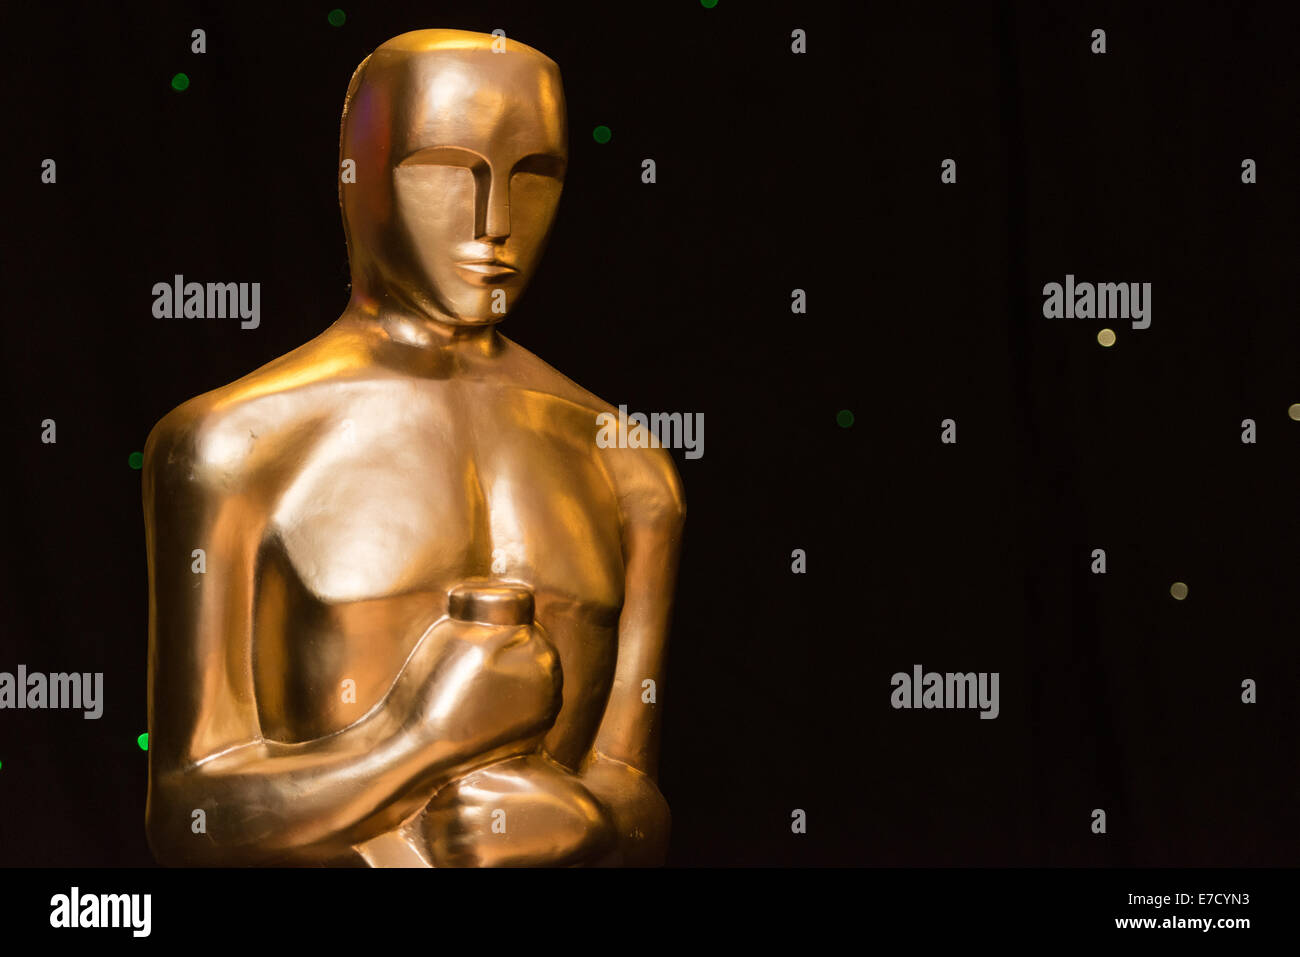 Una statua con le sembianze di Oscar / Academy Award statuetta a Hollywood-evento a tema. Foto Stock